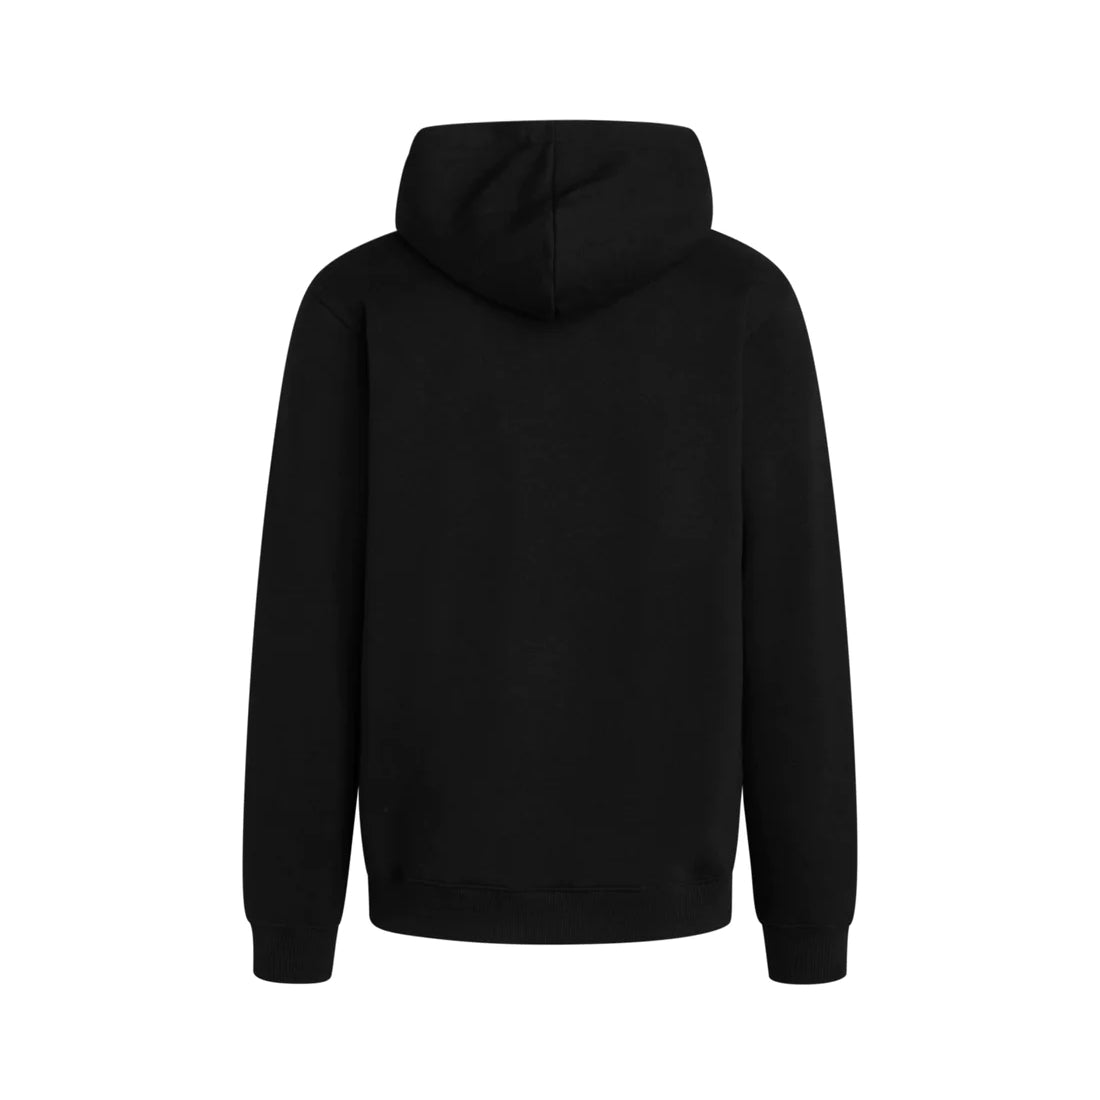 Standard hoodie logo sweat / Black